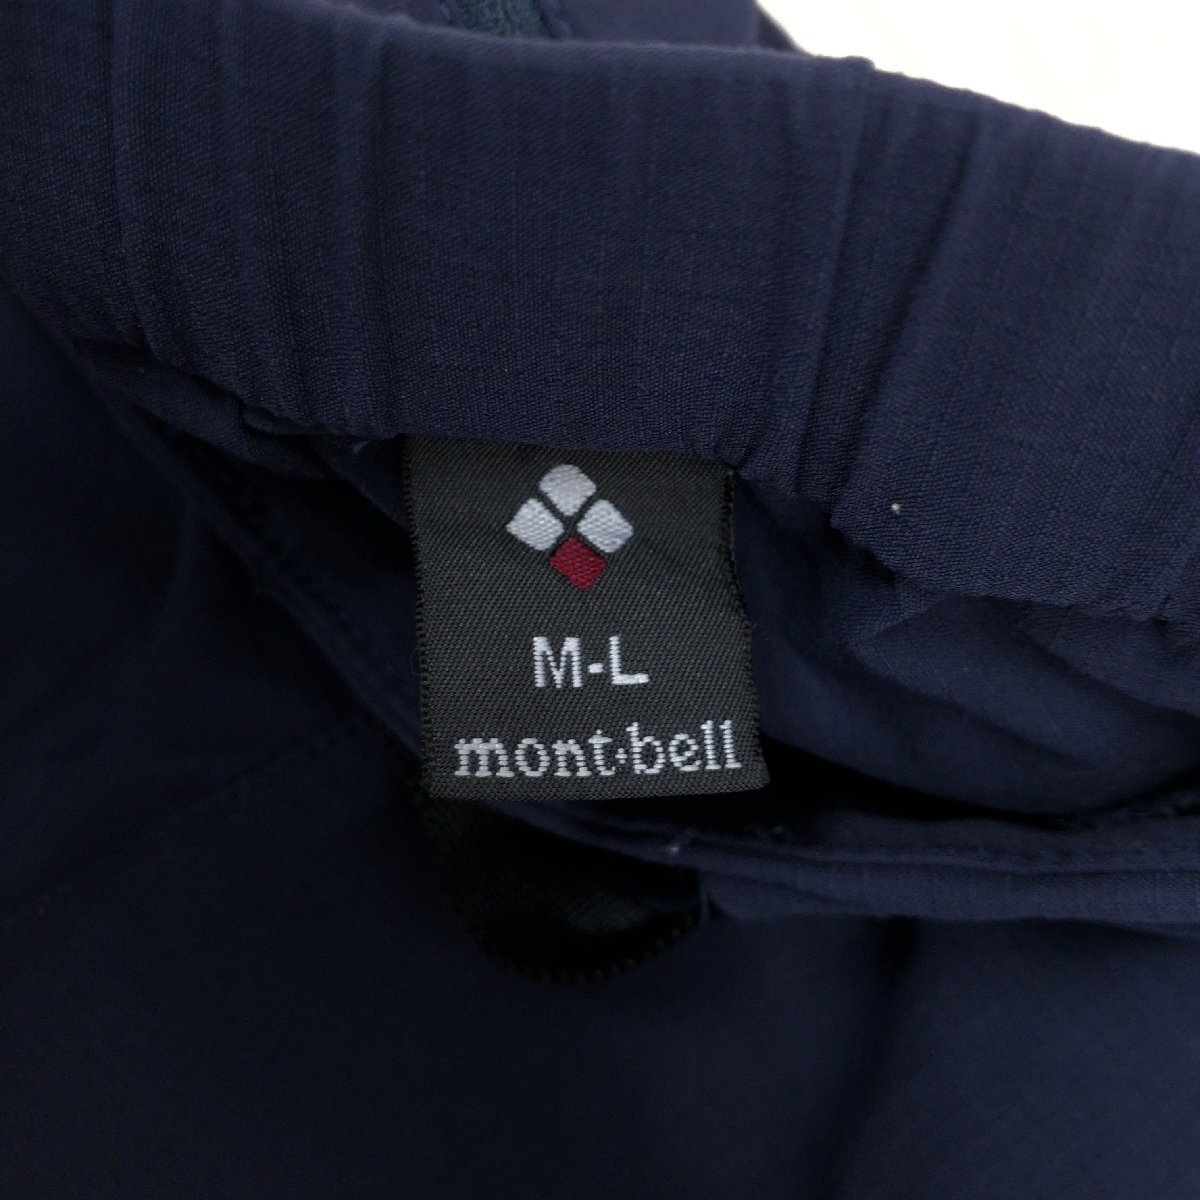 mont-bell モンベル #1105472 定価5,830円 ストレッチ O.D.パンツ M-L 濃紺 ネイビー トレッキング 登山 アウトドア 国内正規品 女性用の画像3